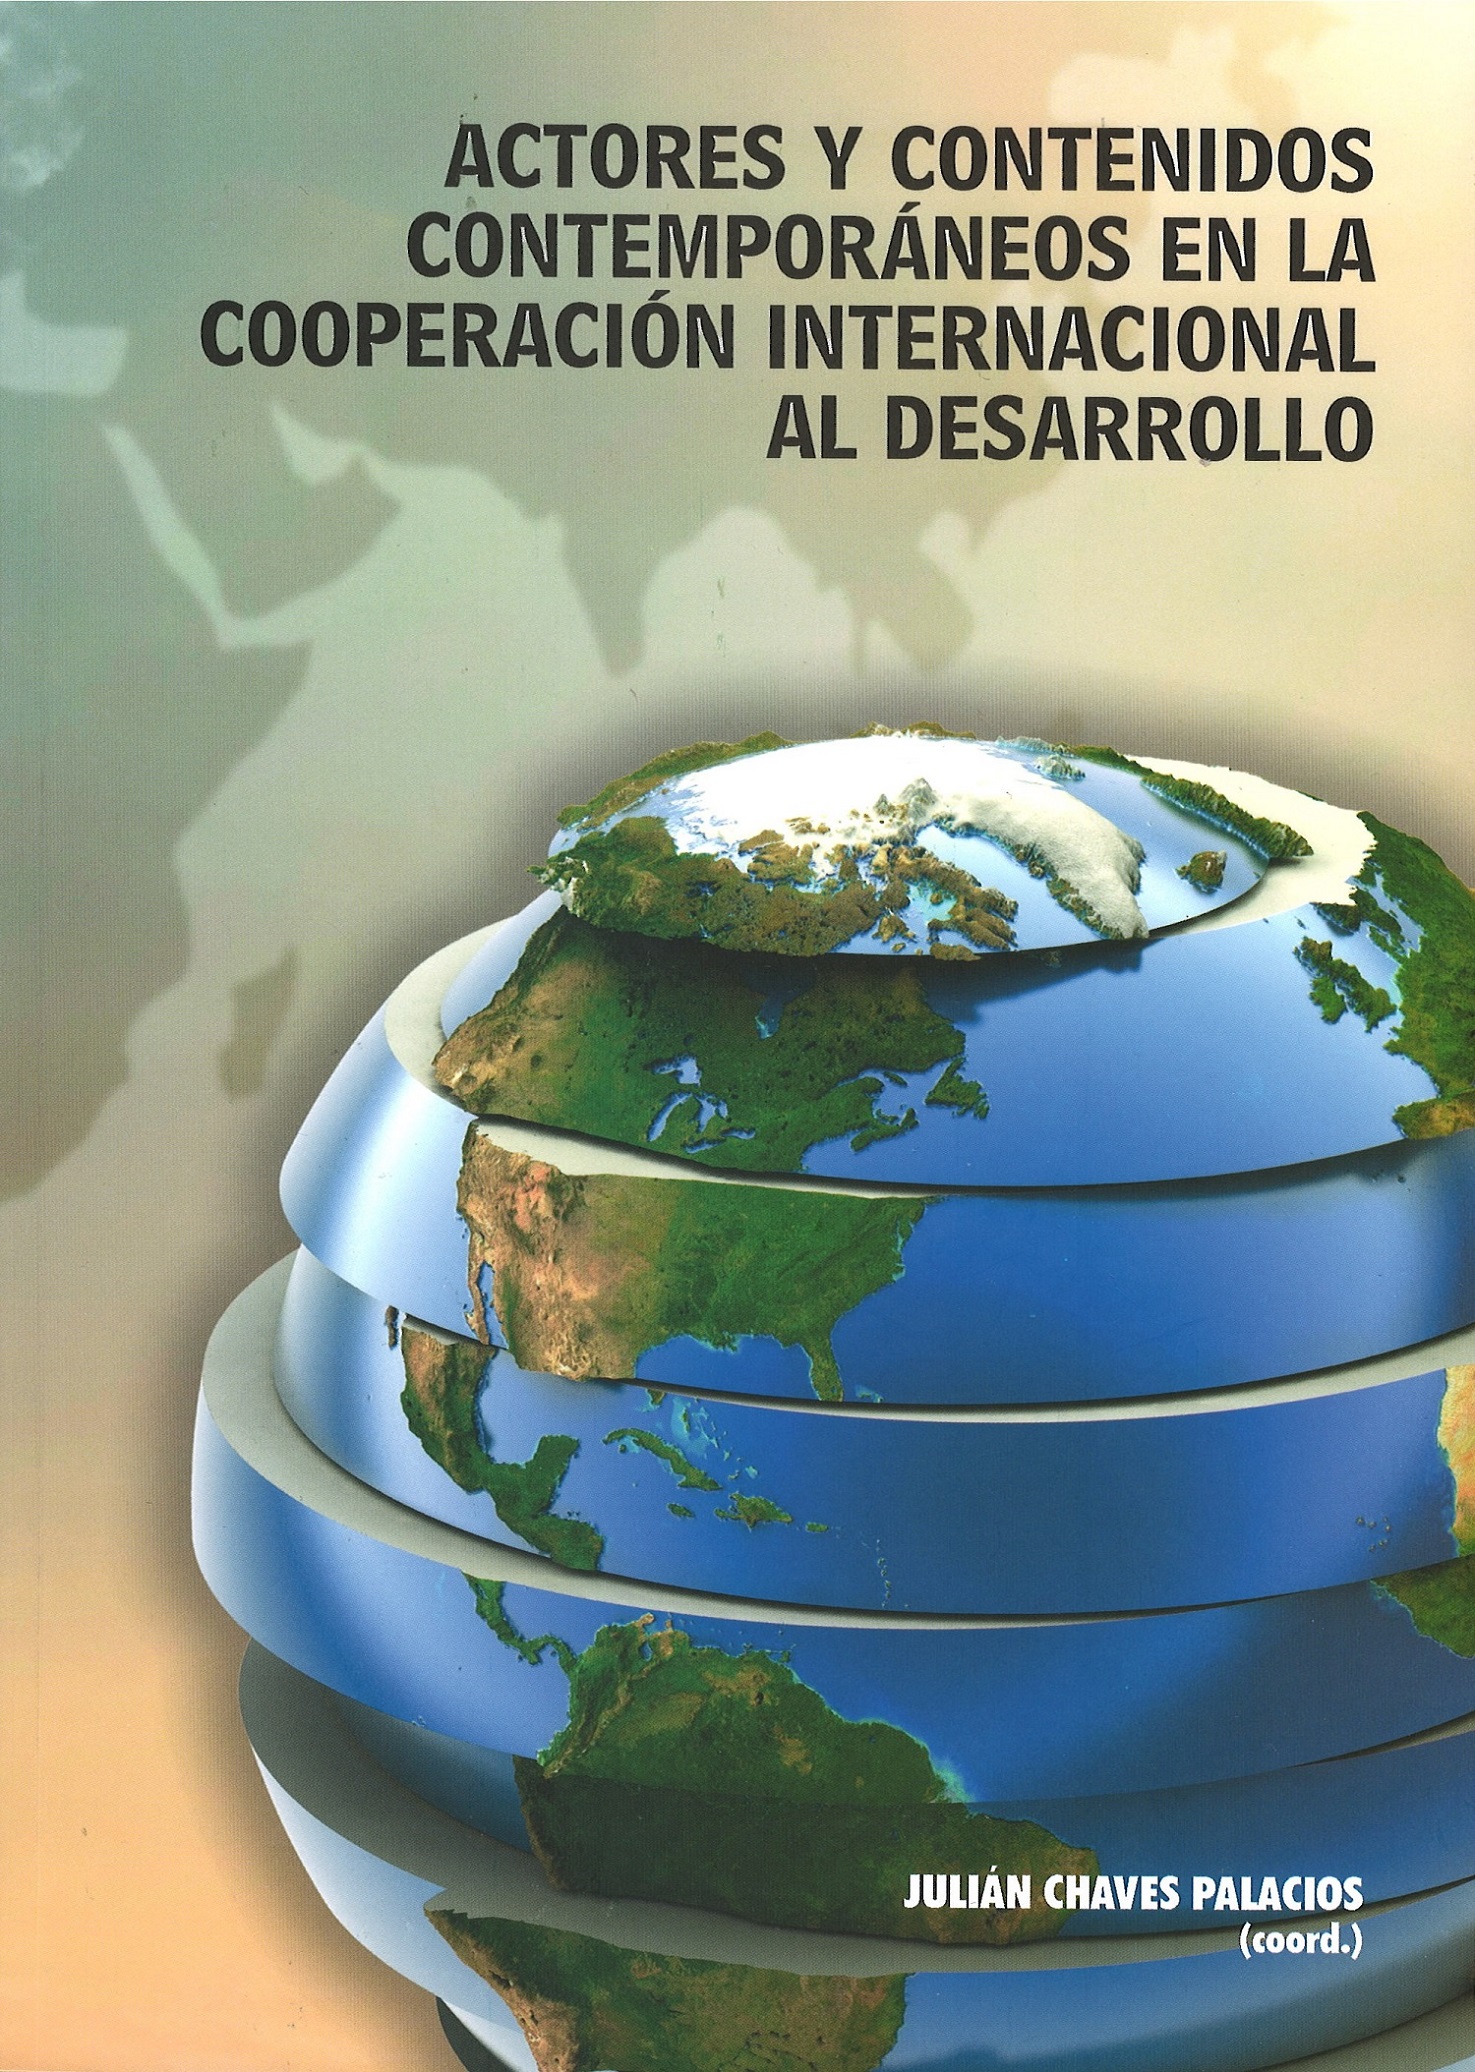 Imagen de portada del libro Actores y contenidos contemporáneos en la cooperación internacional al desarrollo